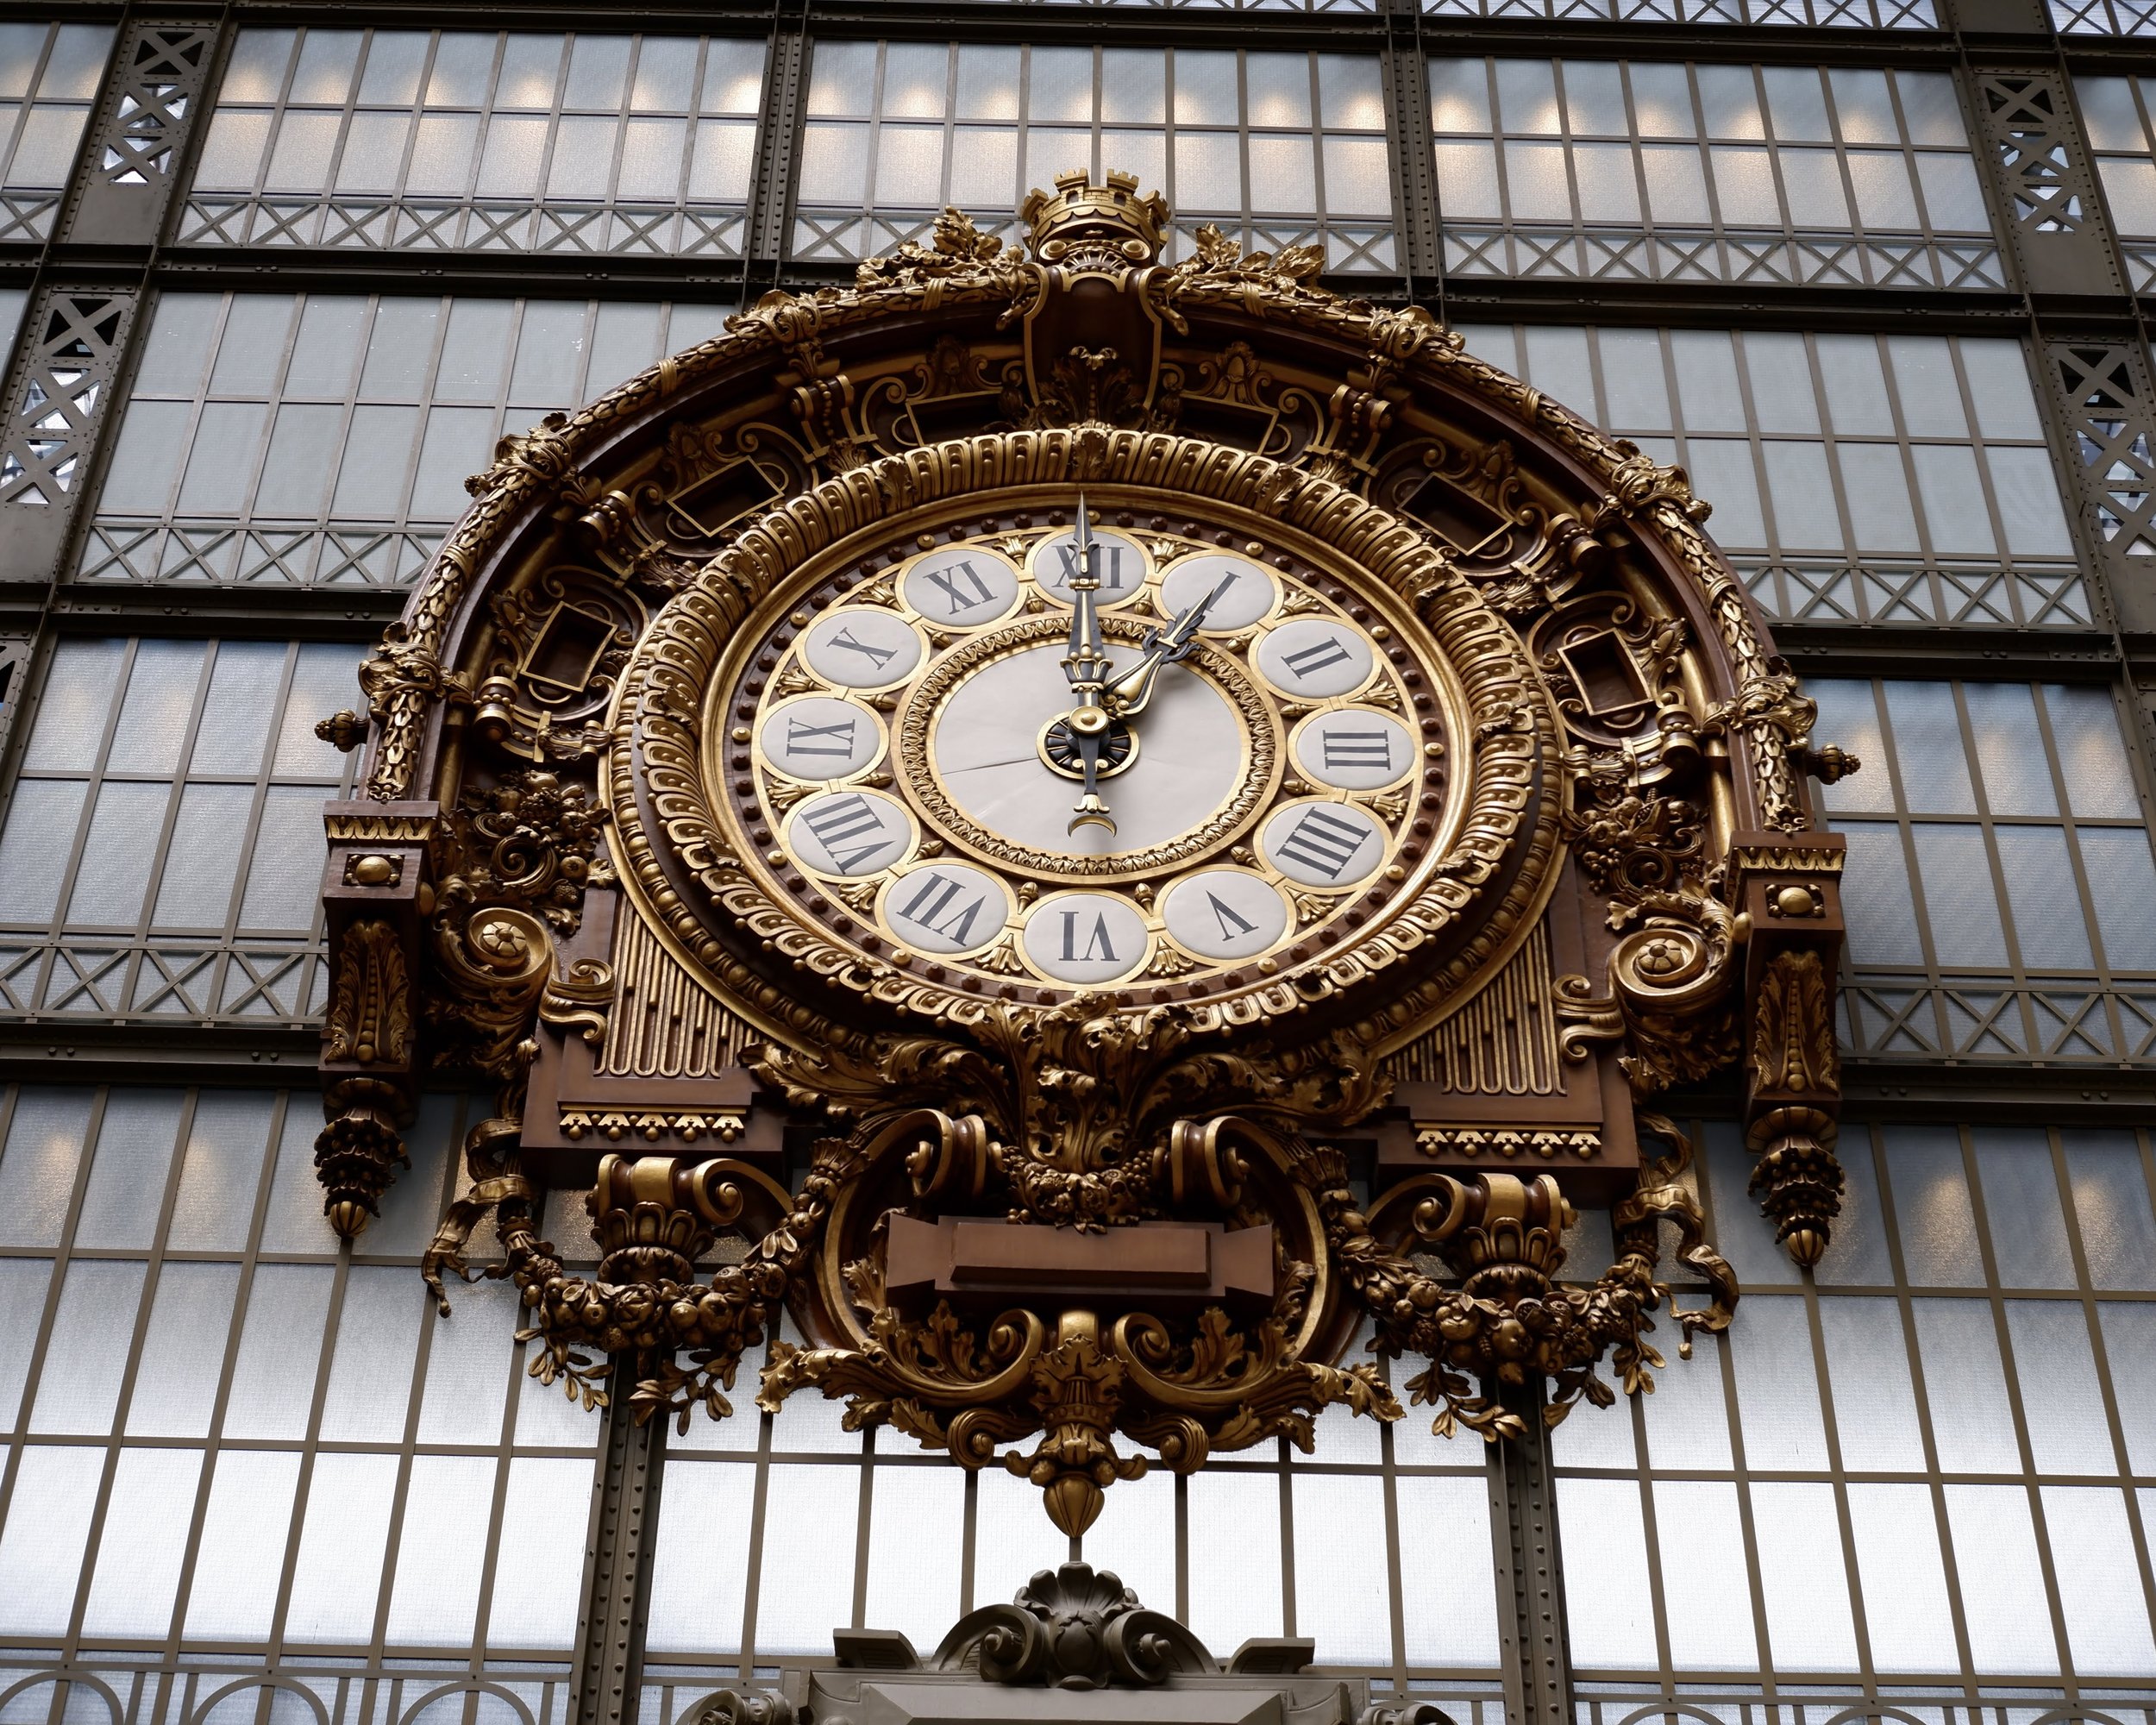  musee dorsay paris france clock  